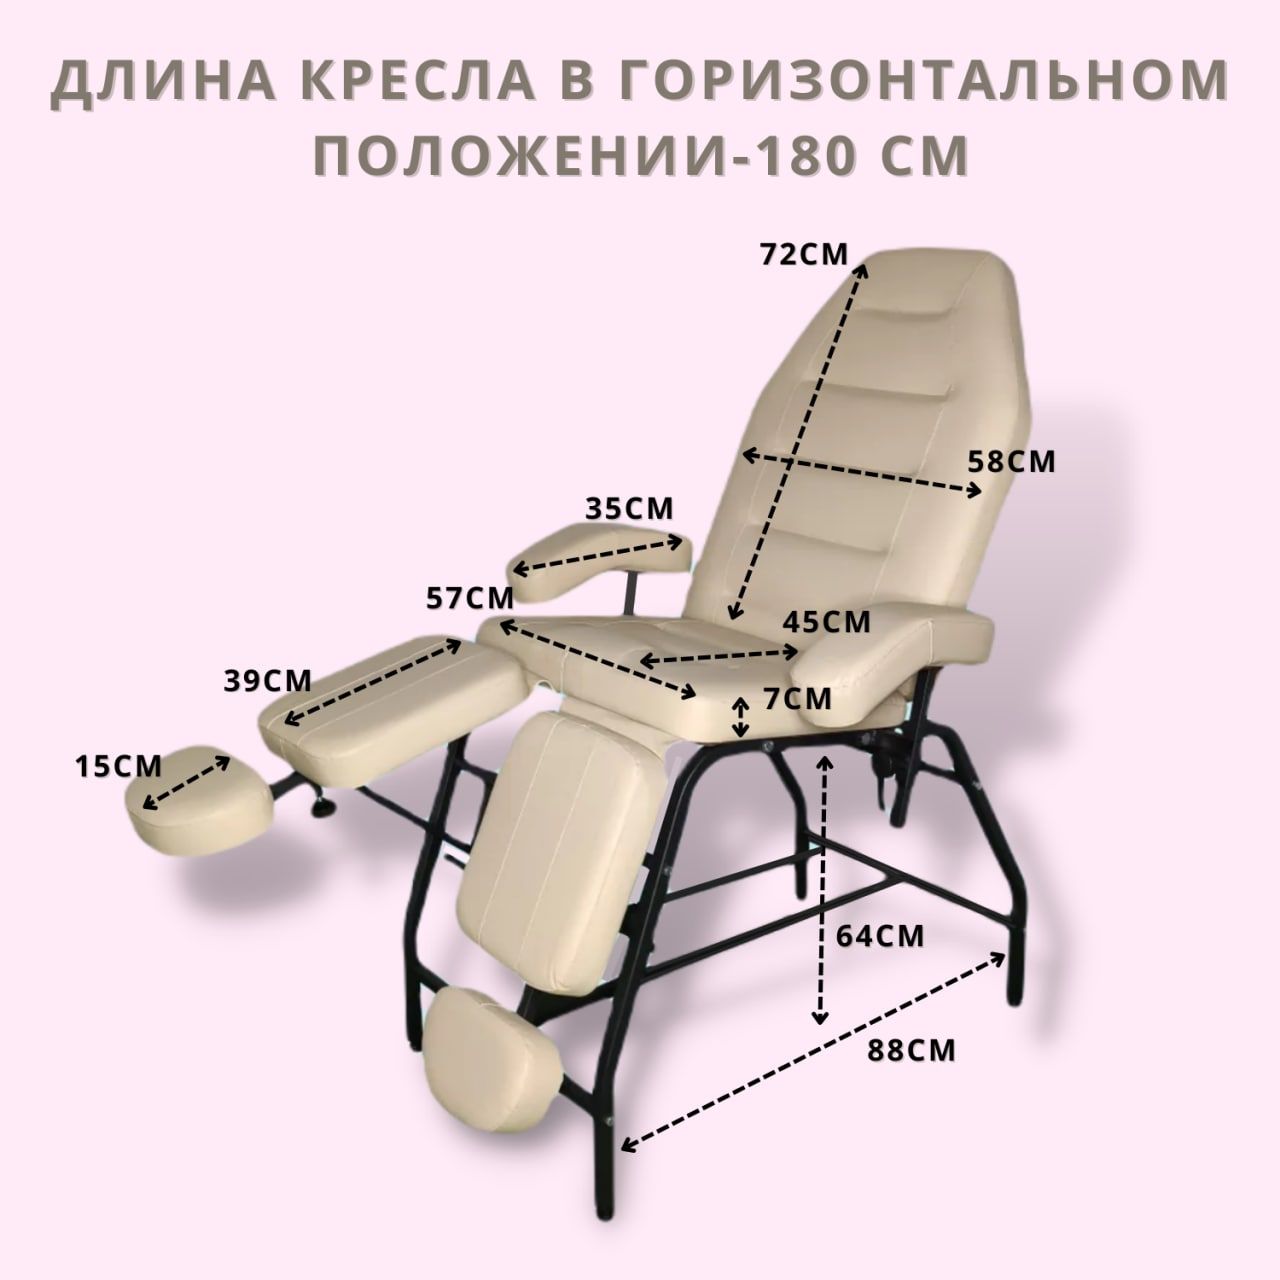 Педикюрное кресло сигма 5